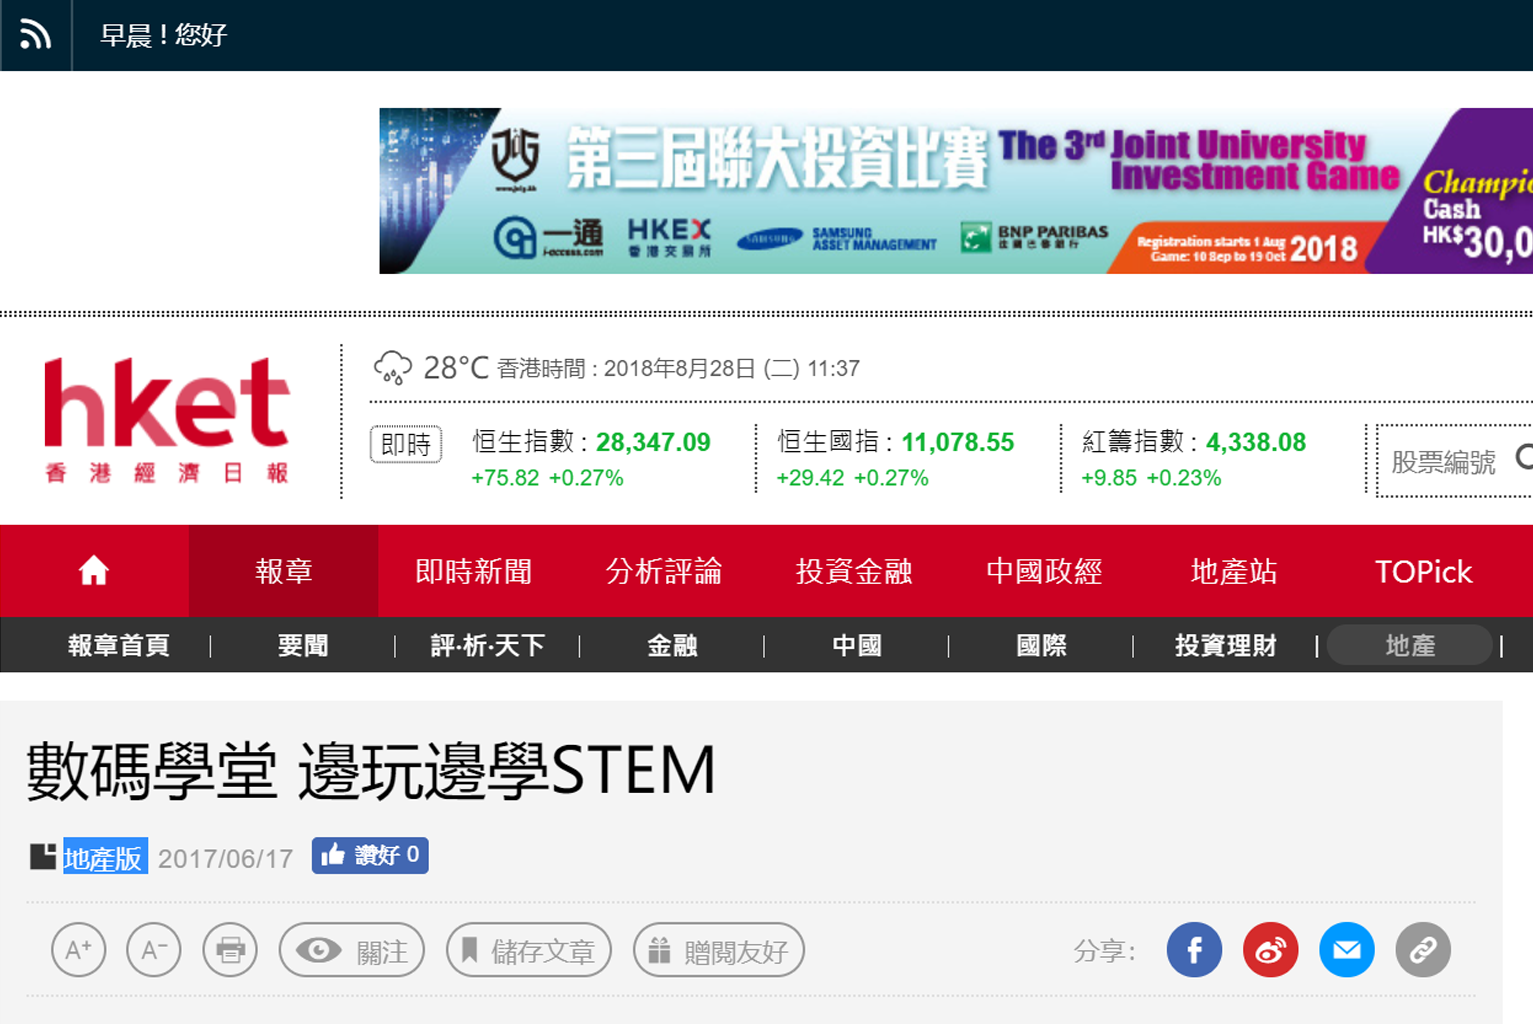 香港經濟日報 HKET - 數碼學堂 邊玩邊學STEM